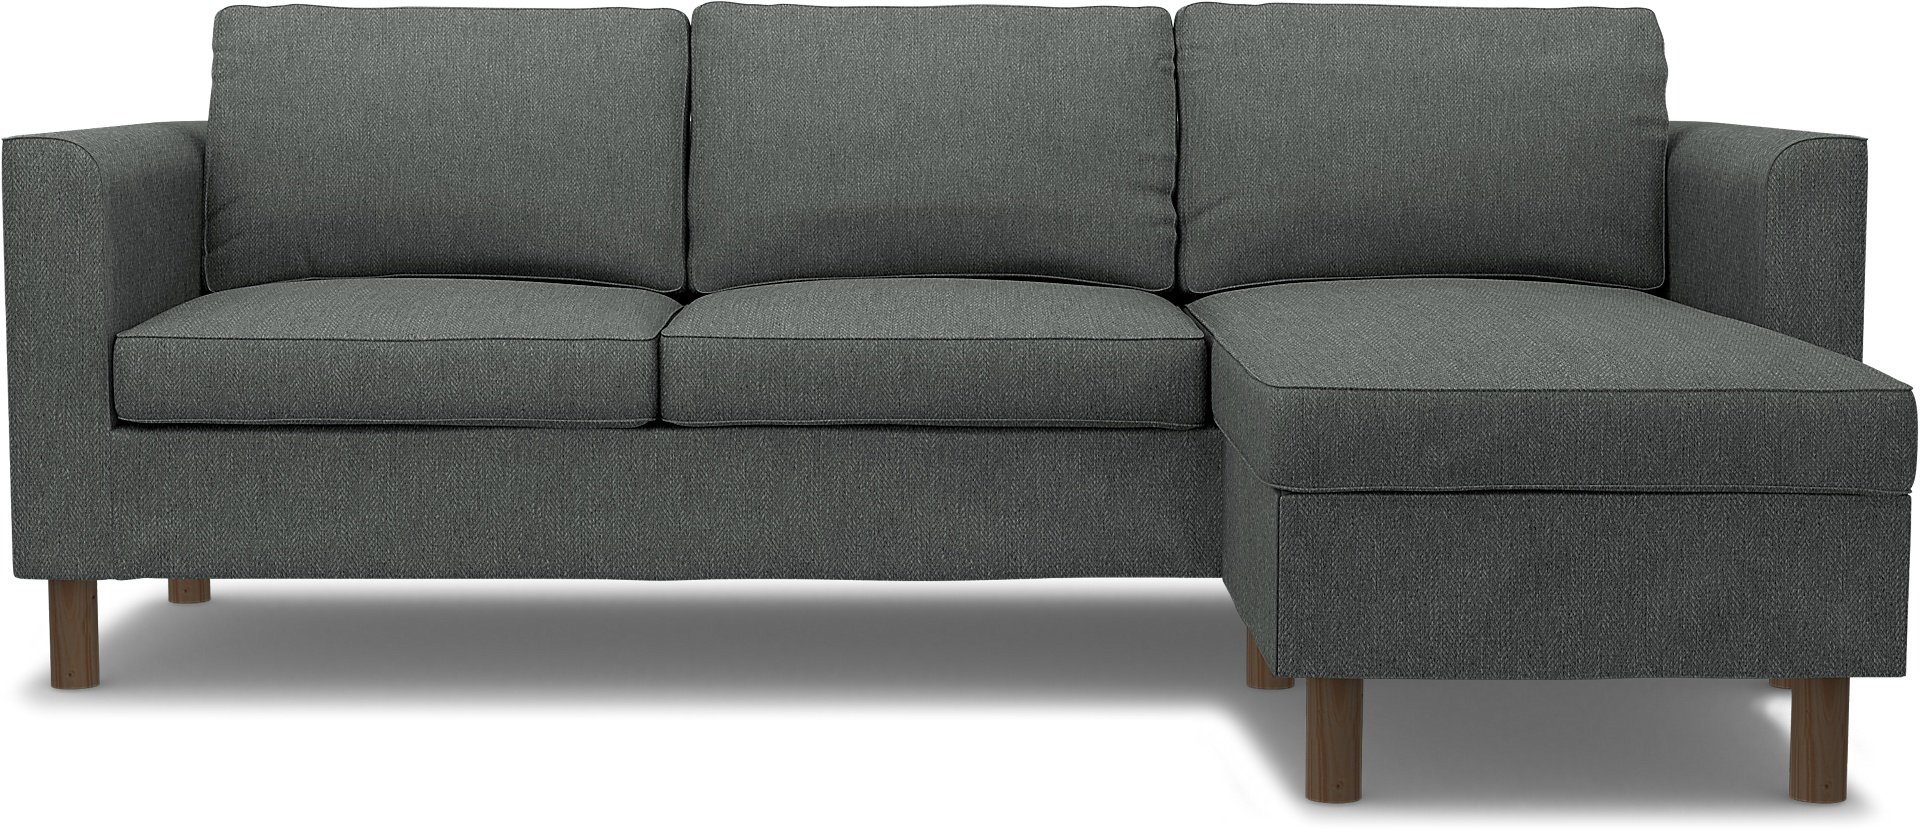 IKEA - Parup 3 Seater with chaise longue, Laurel, Boucle & Texture - Bemz